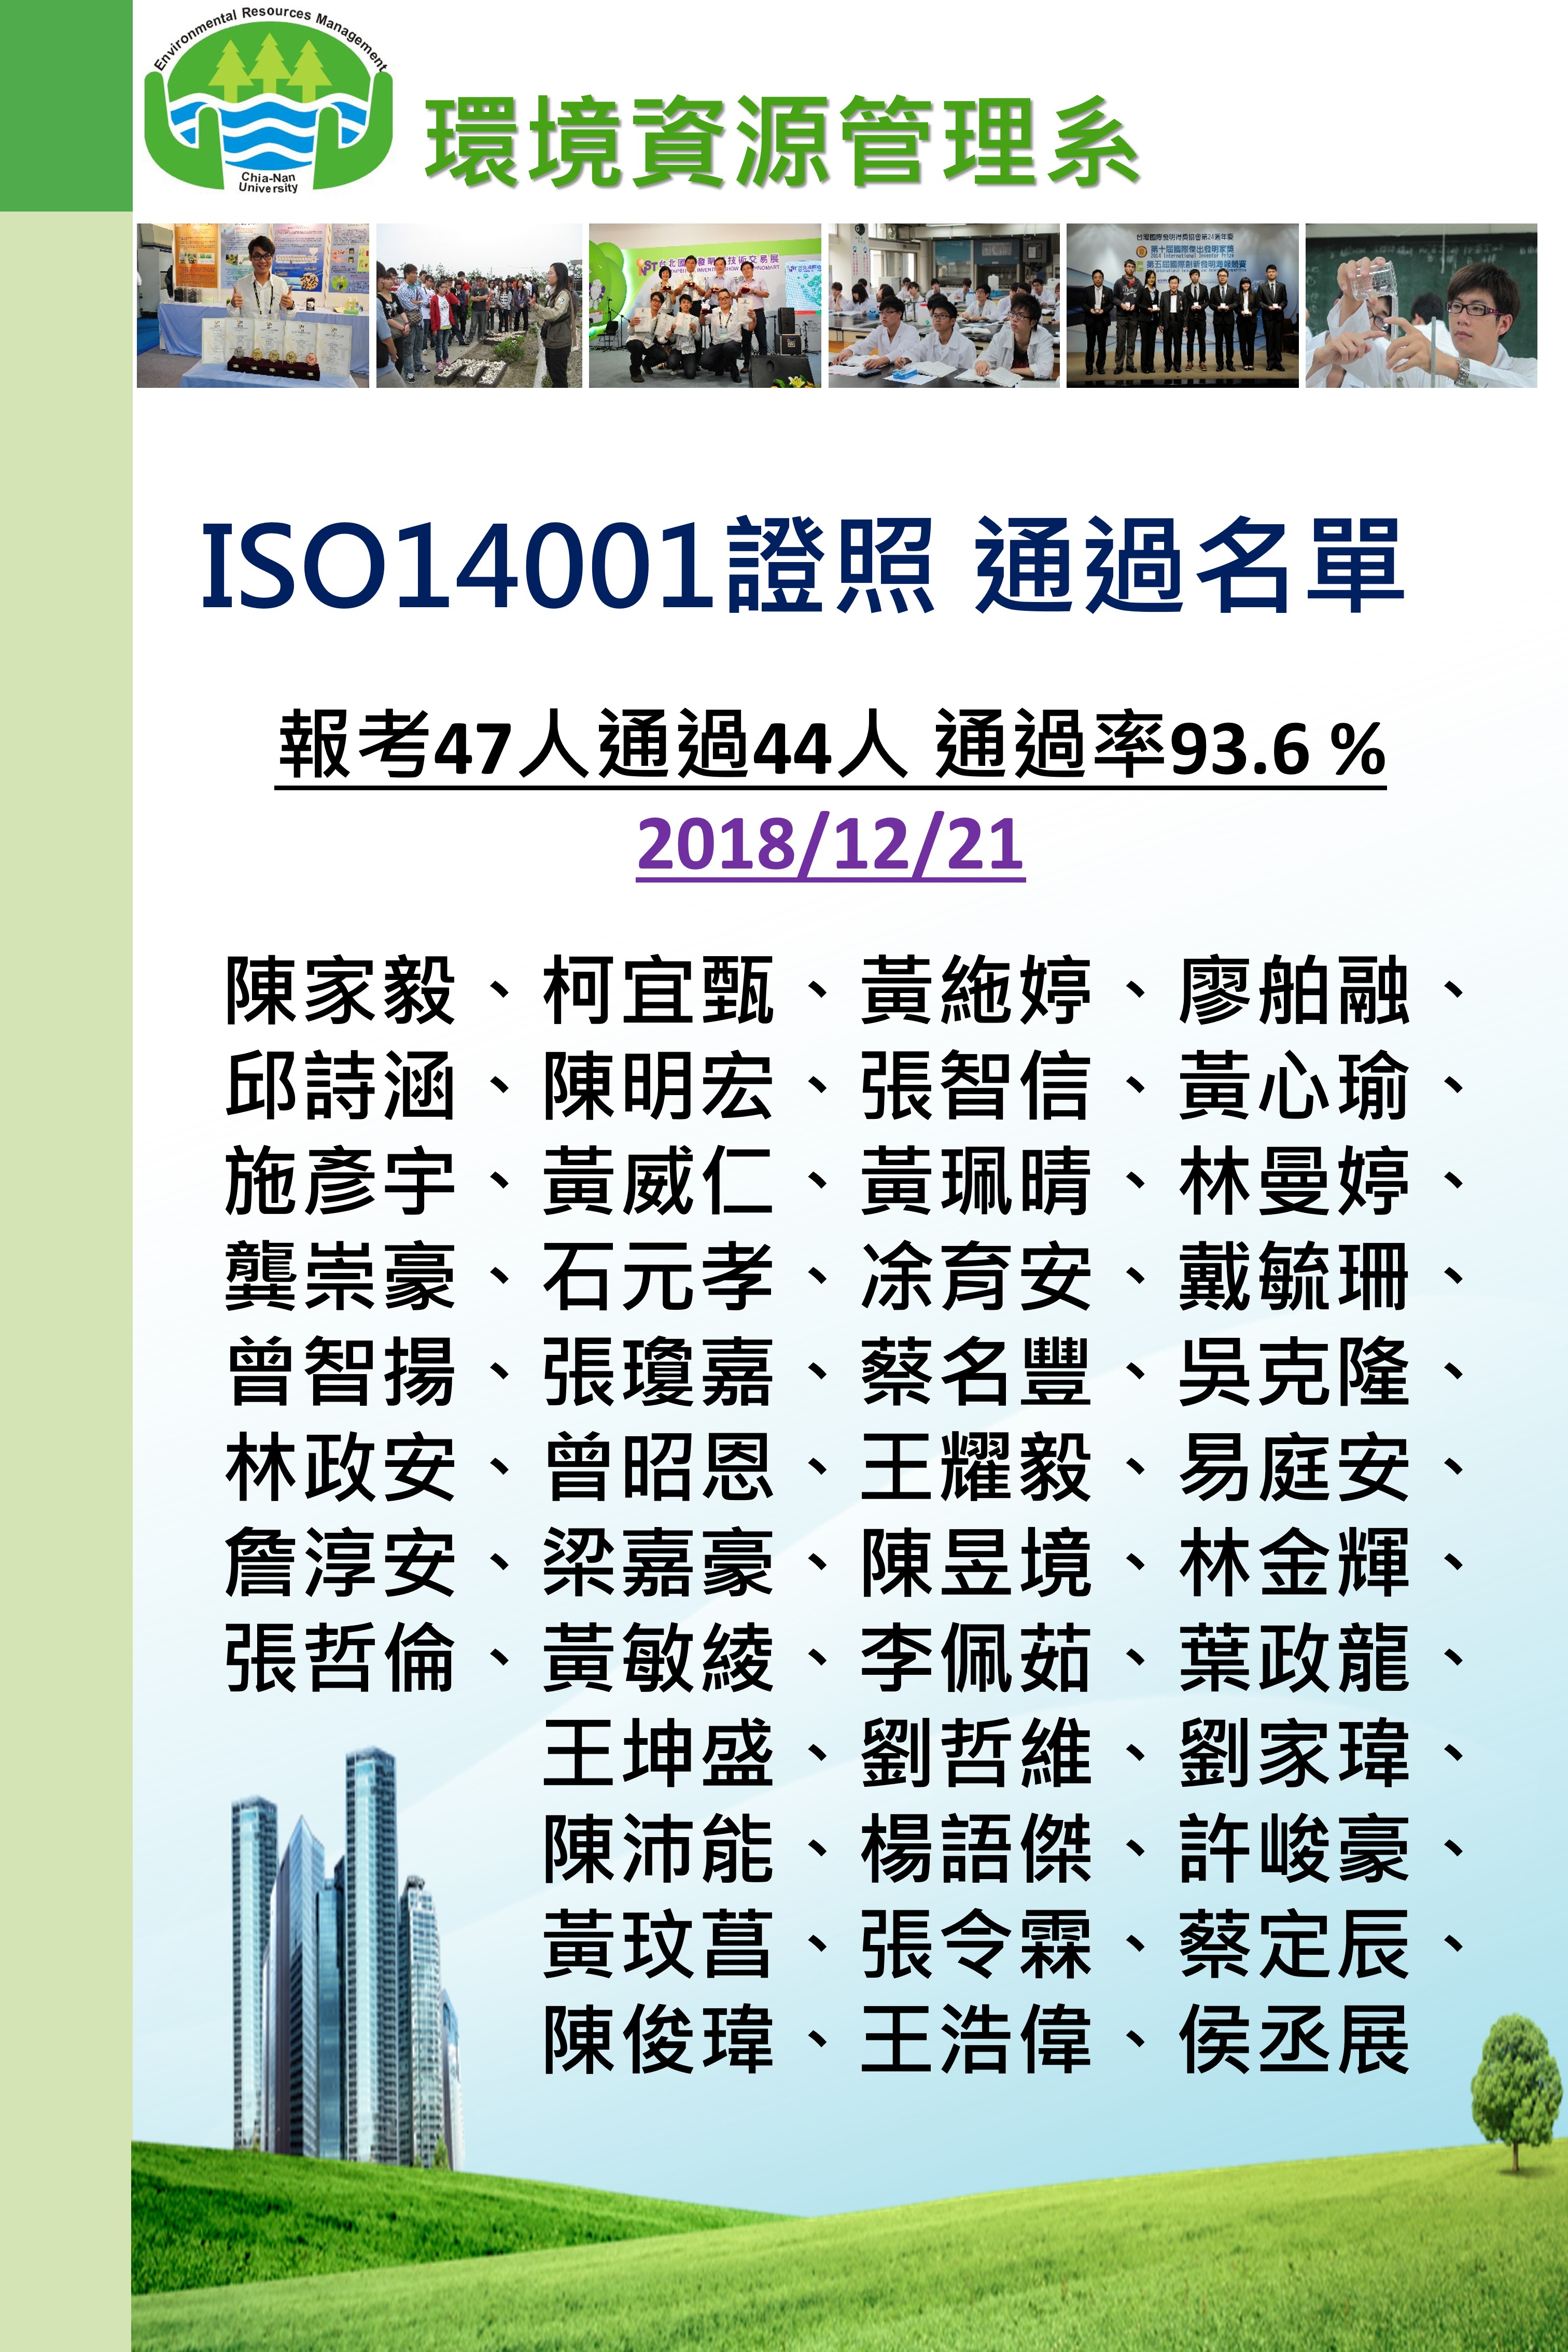 ISO14001通過名單海報-A1